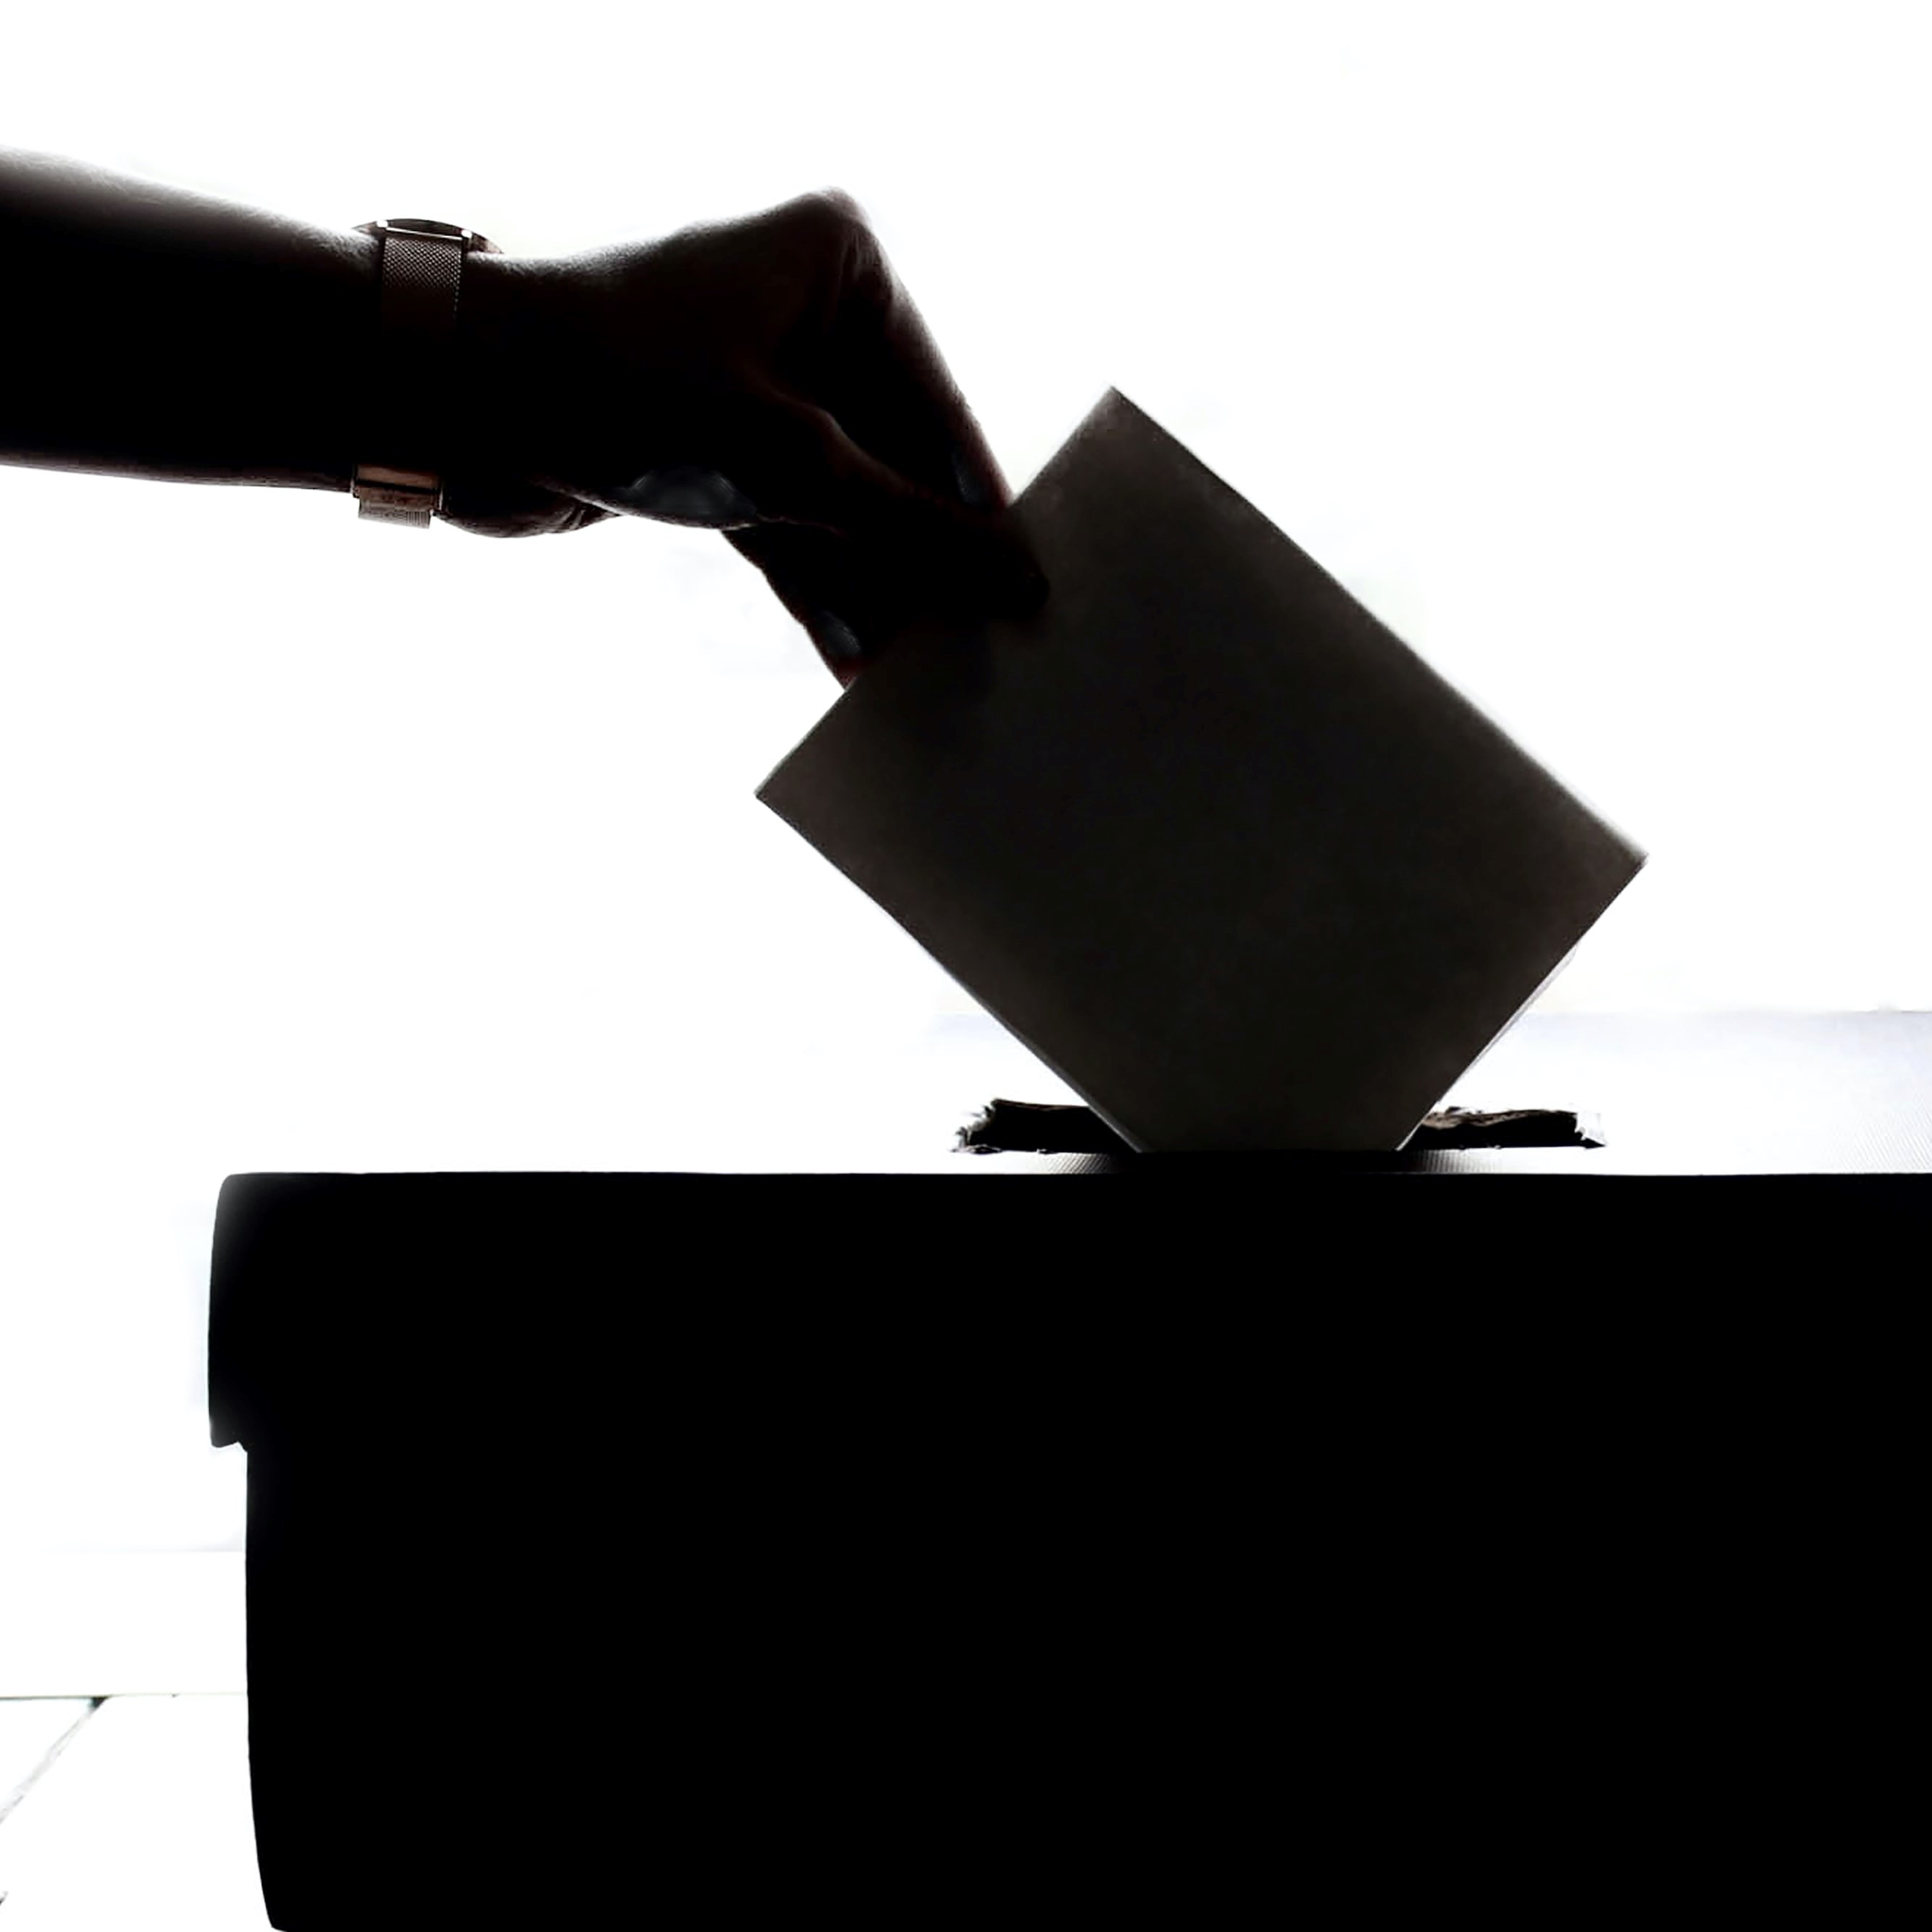 Image représentant la main d'un individu déposant un bulletin de vote dans une urne